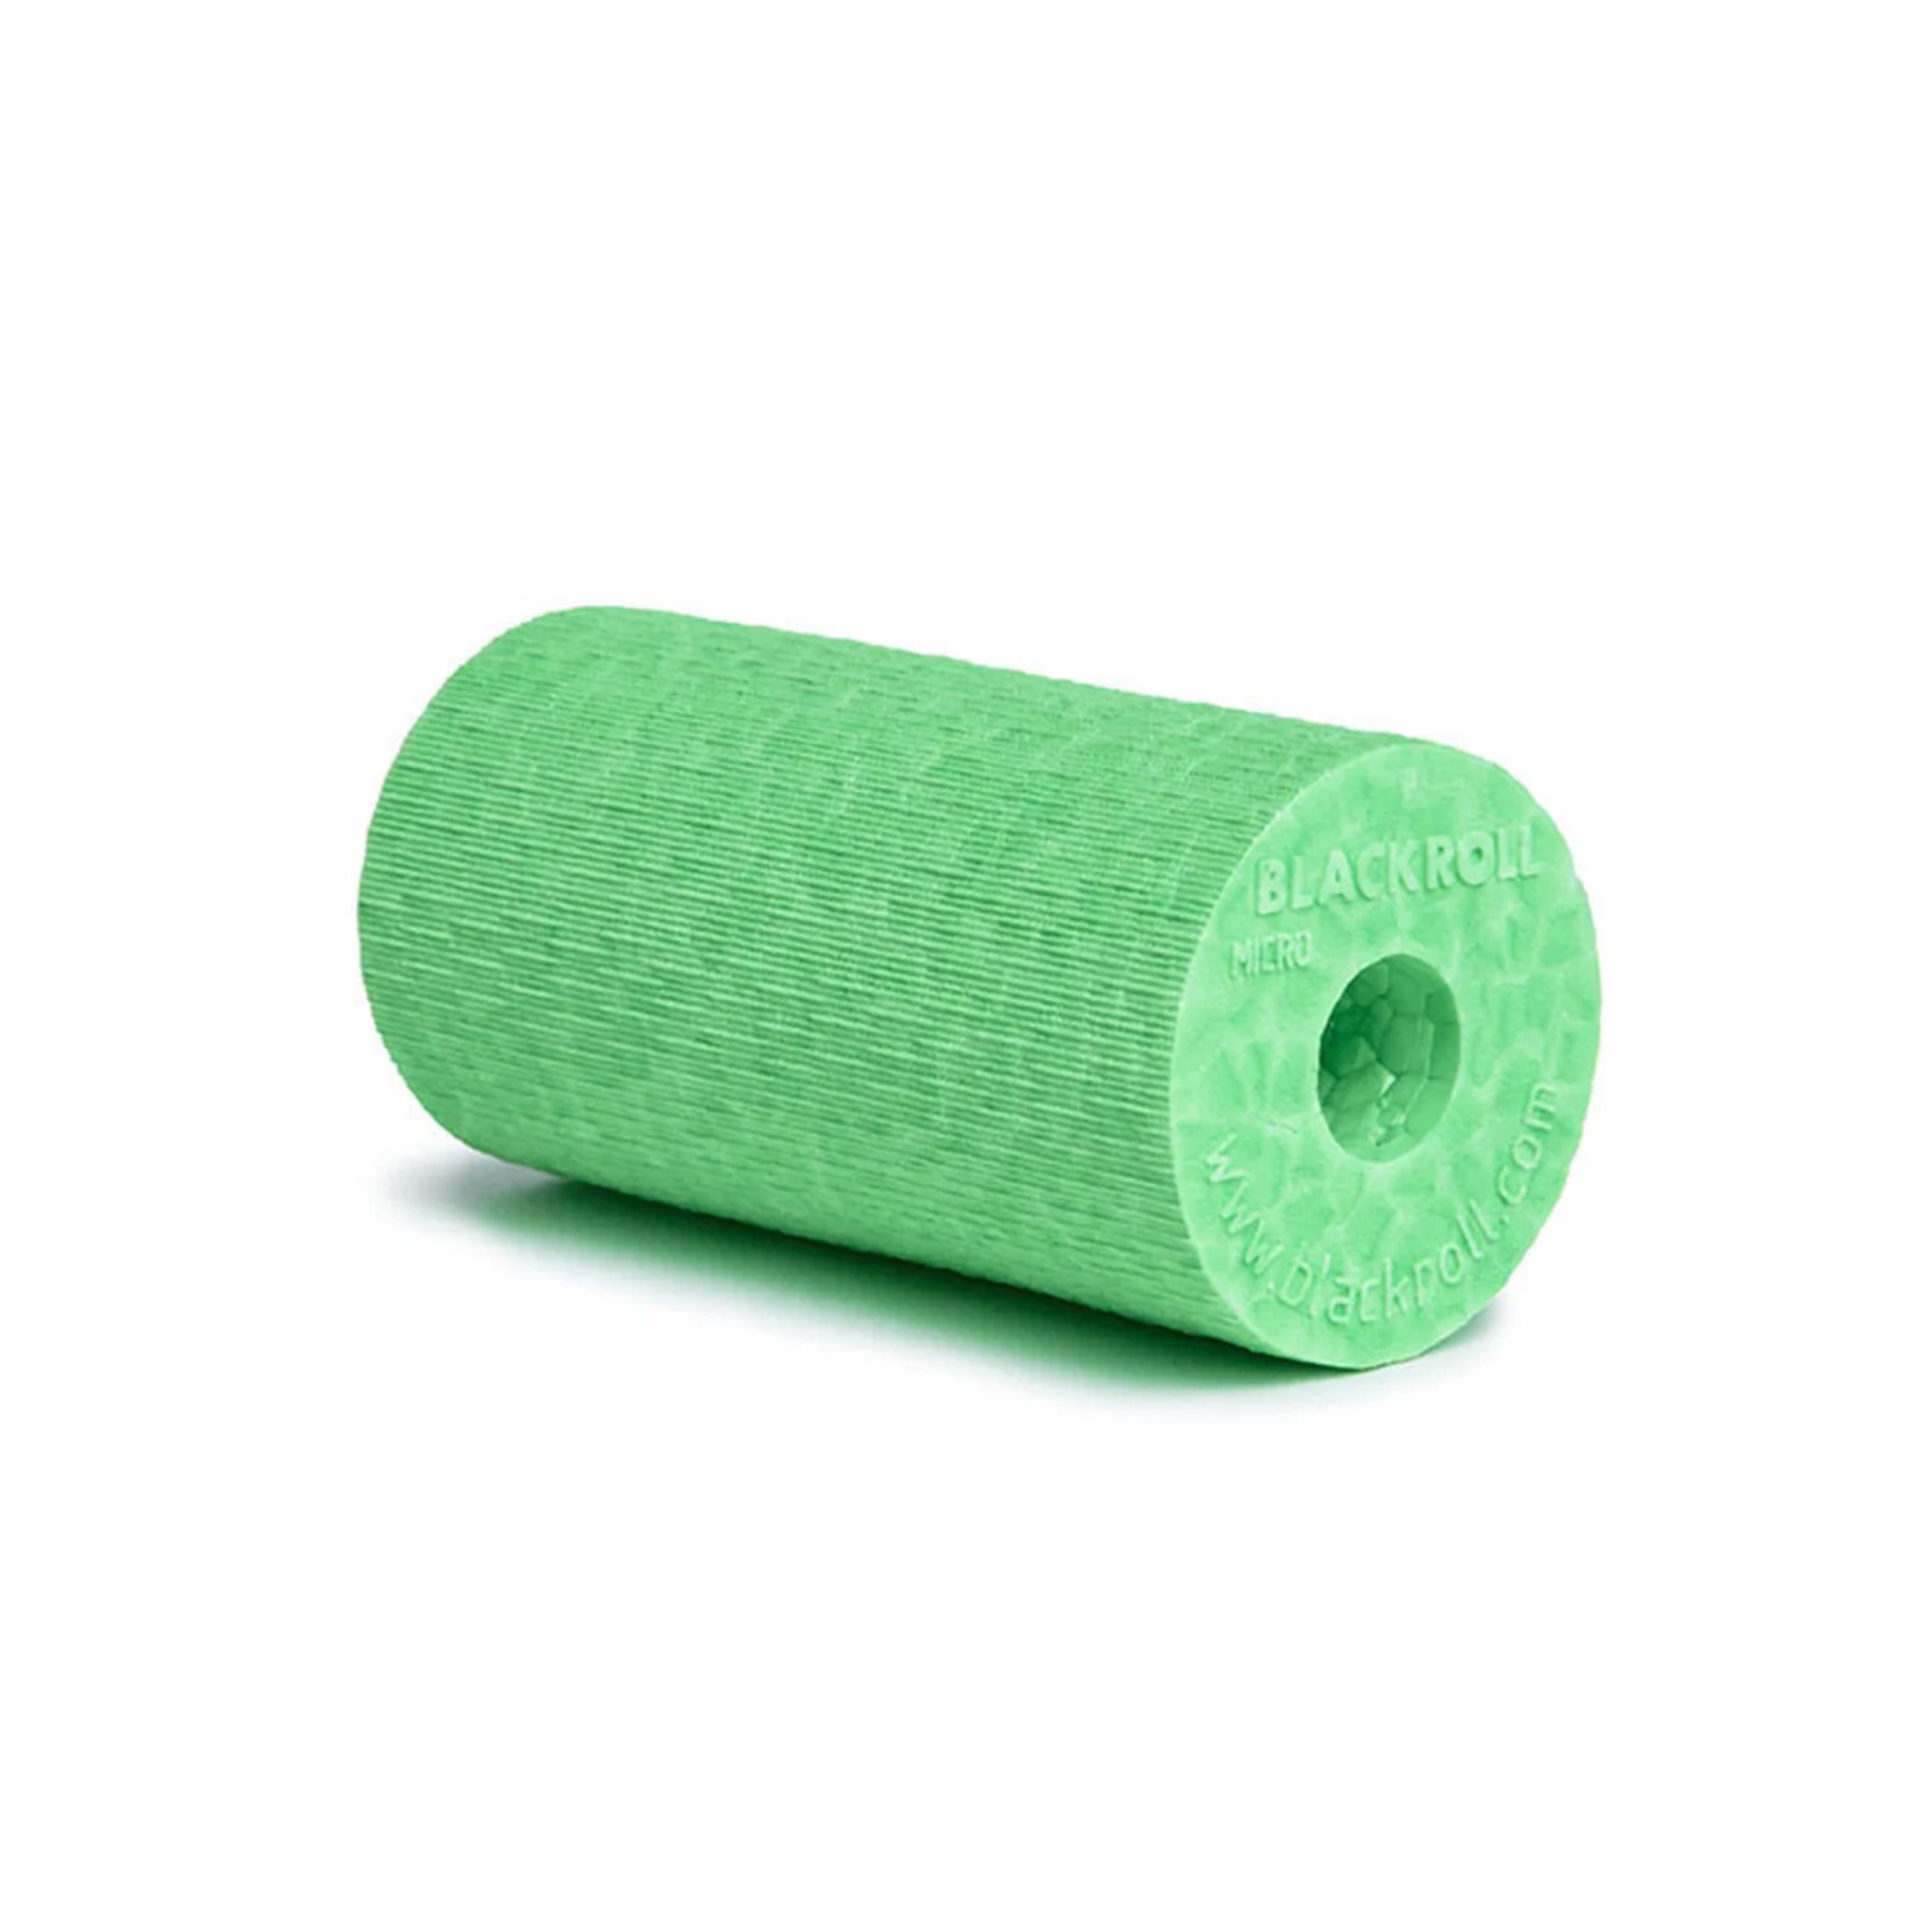 Brug Blackroll Micro Foam Roller Grøn - 6x3 cm til en forbedret oplevelse